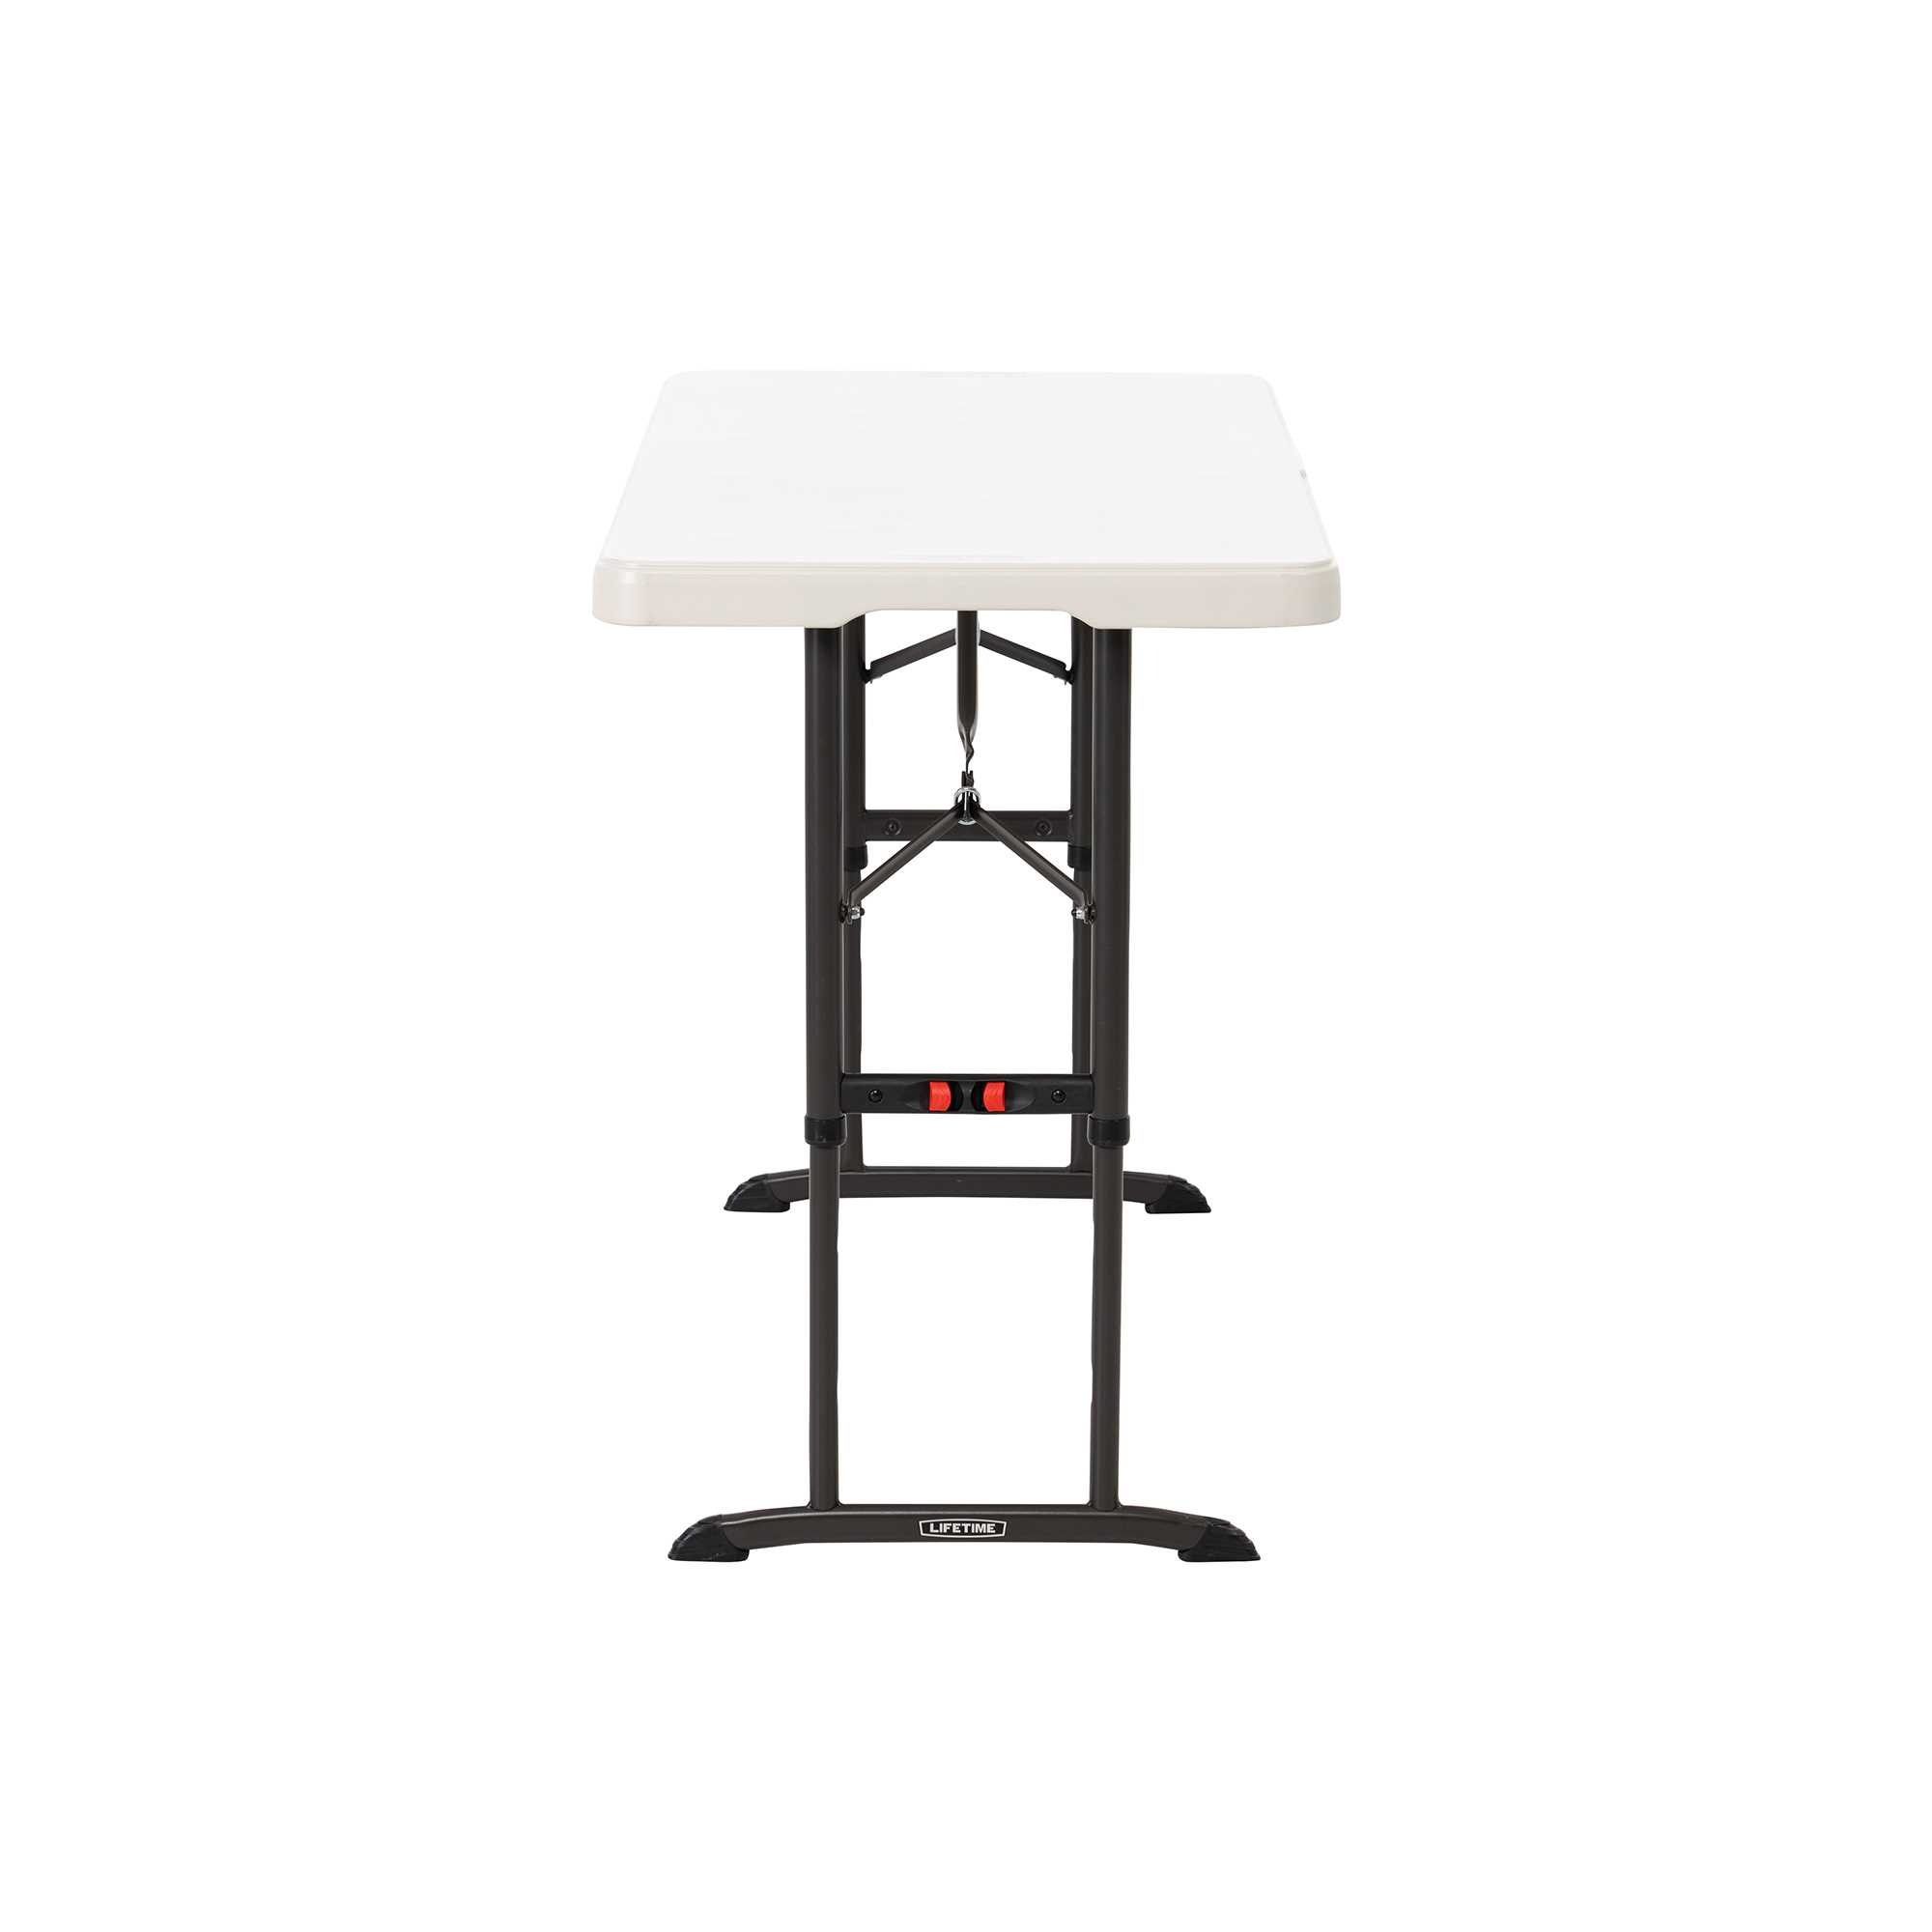 Table pliante rectangulaire ajustable (beige) 122cm NESTING / 4 personnes